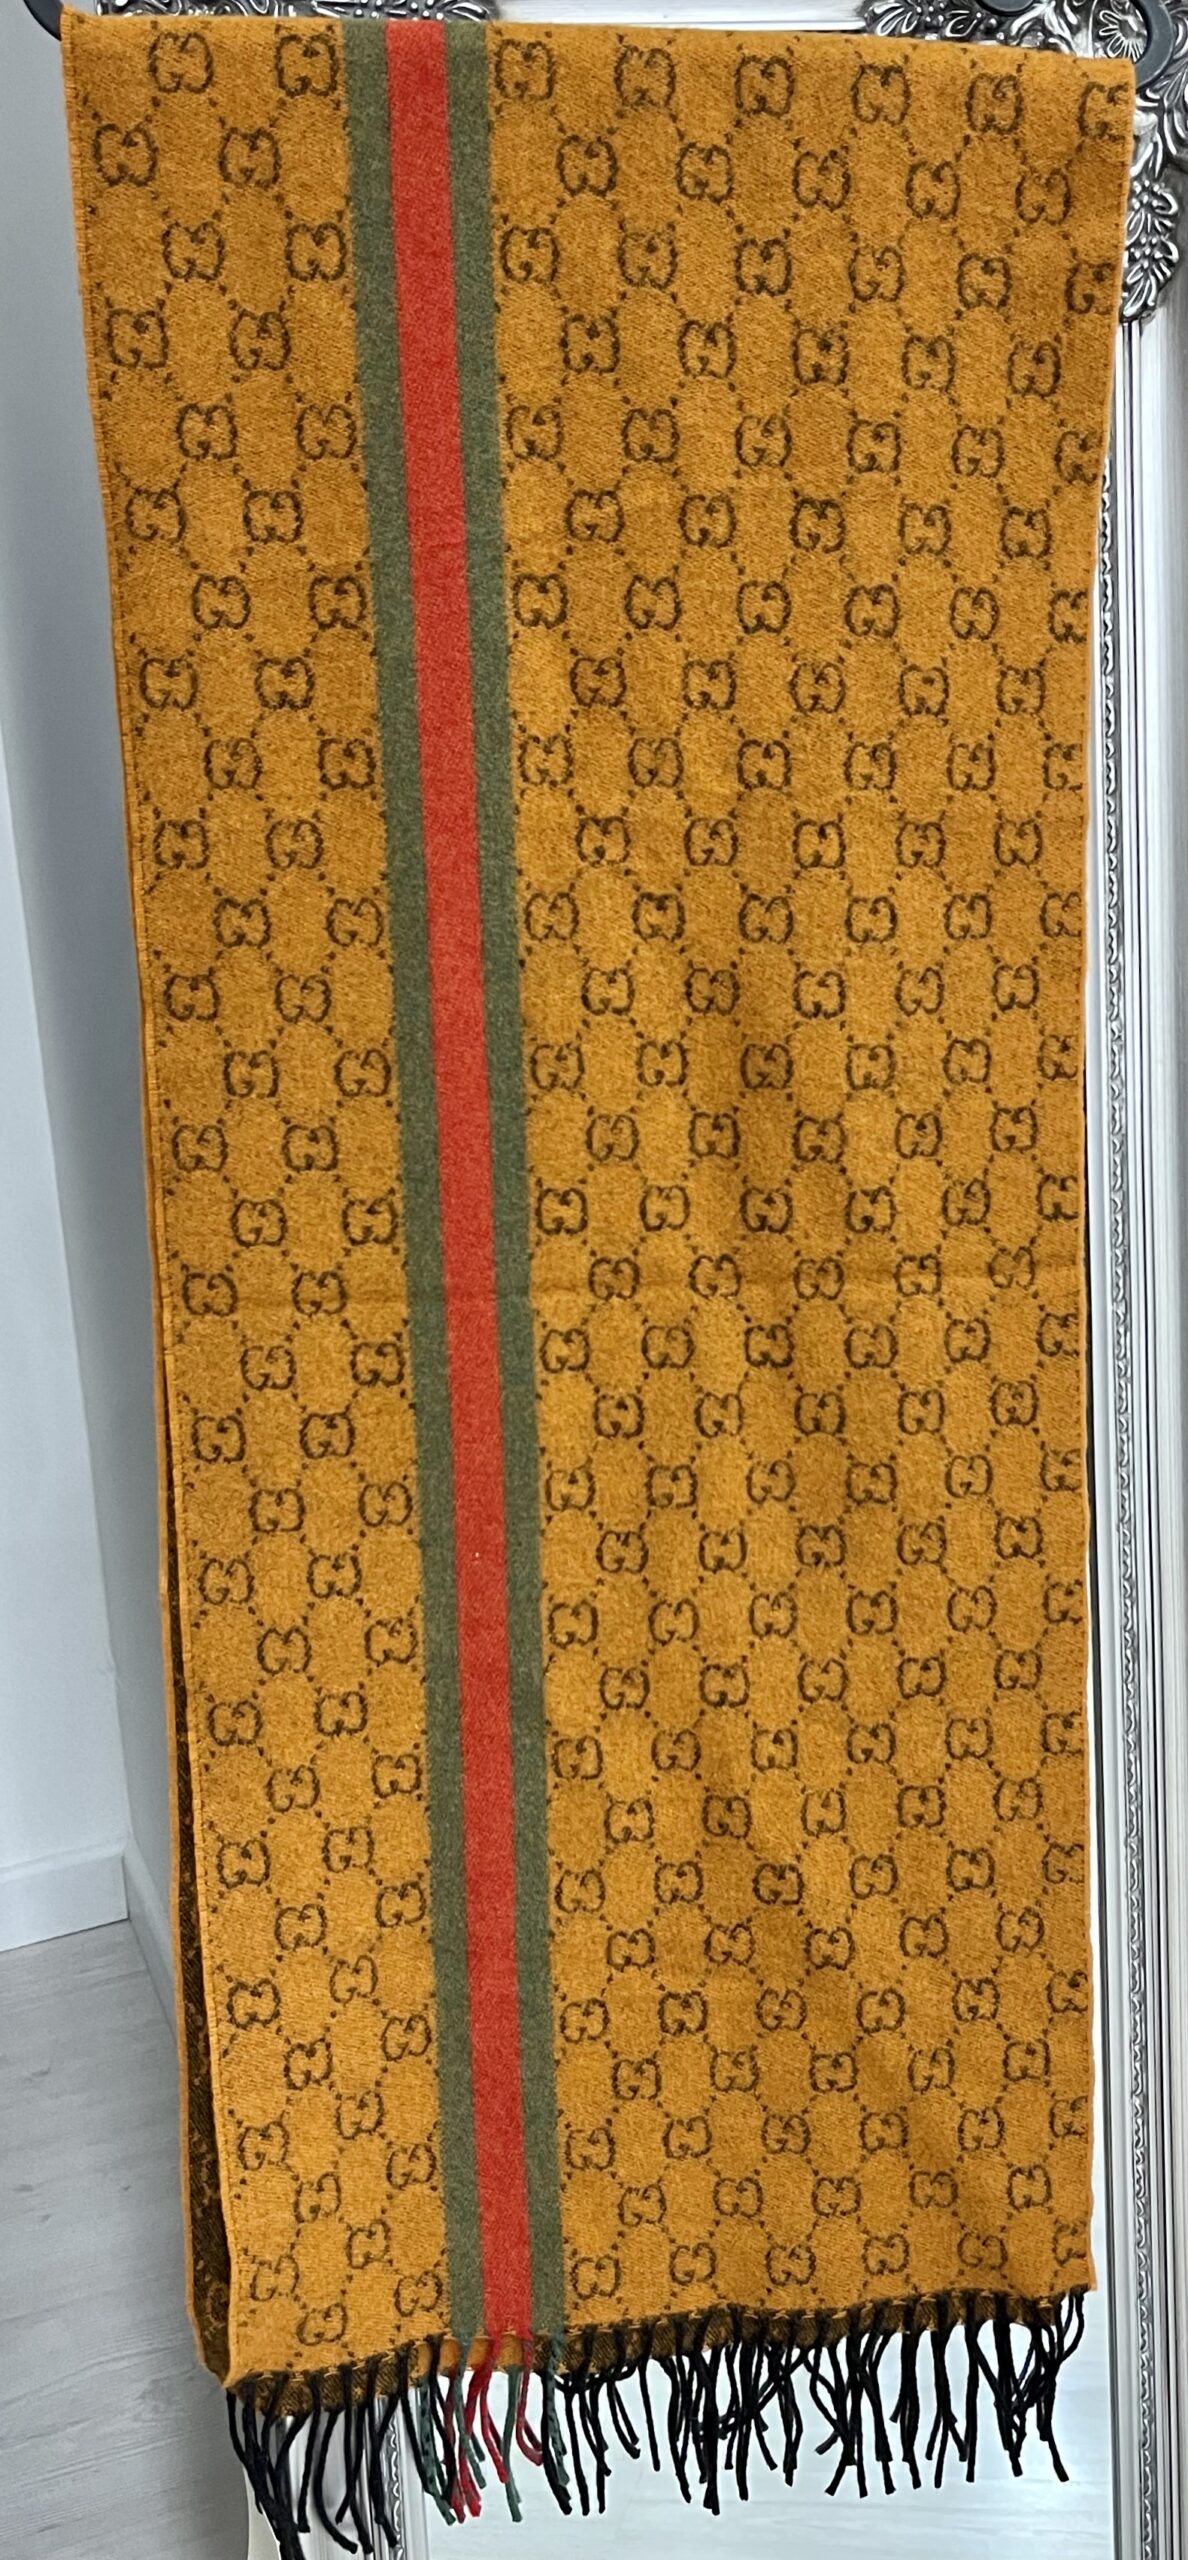 Gucci sciarpa cashmere color arancio stampa GG e fascia rossa/verde